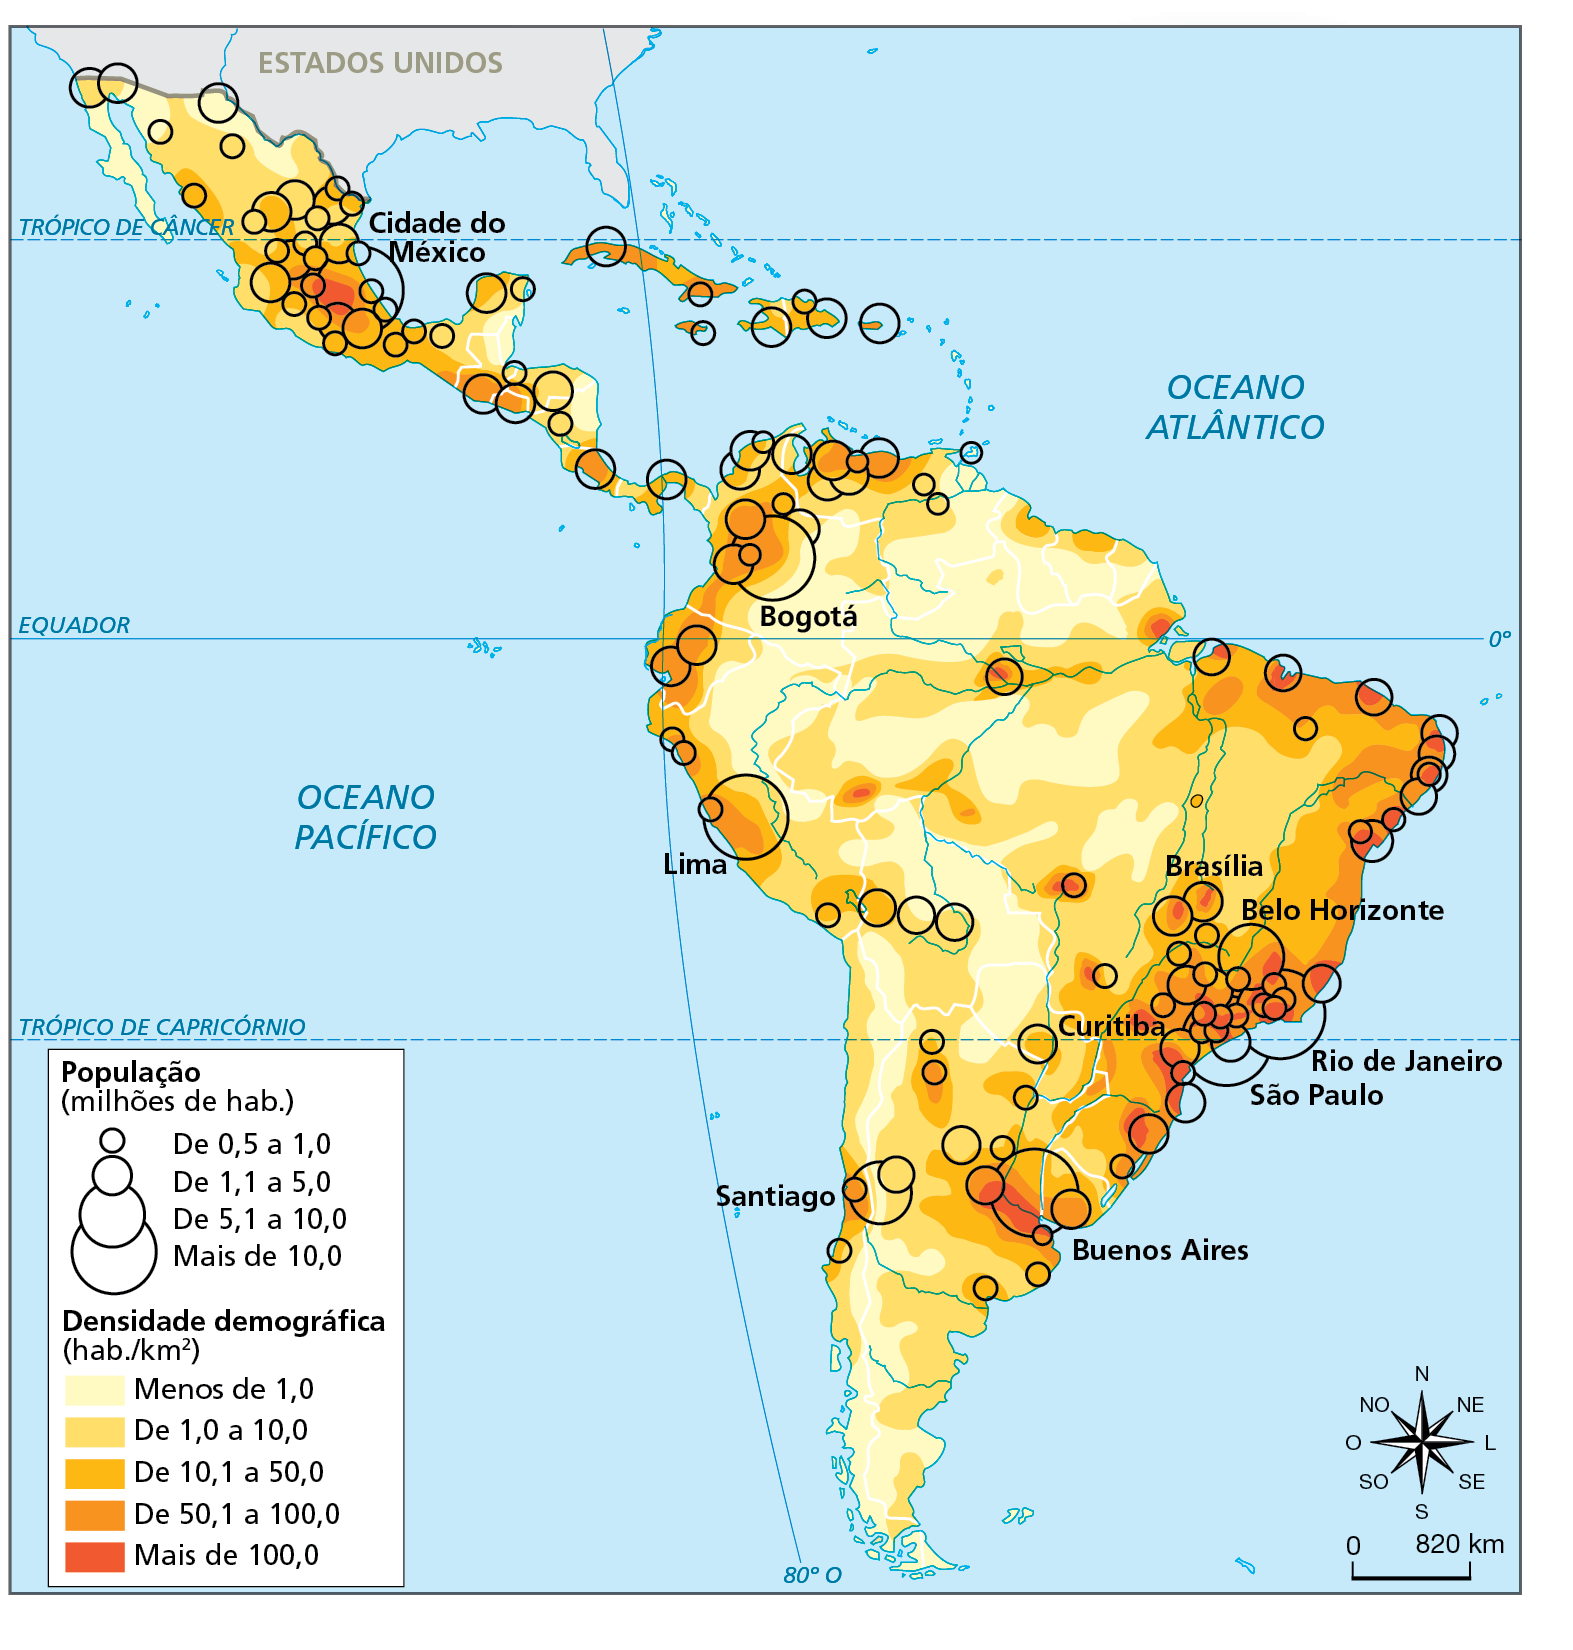 Mapa. América Latina: aglomerados urbanos – 2020. Representação da América Latina demarcando as áreas com diferentes níveis de densidade demográfica, em habitantes por quilômetro quadrado, destacadas em tonalidades de cor que variam do mais fraco (áreas com baixa densidade), para o mais forte (áreas com elevada densidade). O mapa também localiza as principais aglomerações de habitantes, por meio de círculos proporcionais que variam de 0,5 até mais de 10 milhões habitantes.  Em toda a extensão da América Latina, as porções mais densamente povoadas se concentram na faixa litorânea, destacando a costa brasileira e a região próxima a foz do Rio da Prata, na divisa entre a Argentina e o Uruguai. A exceção nesse caso se deve à porção central do México, onde se localiza a Cidade do México. Por outro lado, as densidades demográficas mais baixas estão relacionadas às regiões desérticas e de terras áridas, como no caso do Deserto do Atacama, ou de florestas densas, a exemplo da Floresta Amazônica.   Em relação aos principais aglomerados urbanos, destacam-se:  De 0,5 a 1,0 milhão: diversas cidades em todos os países da América Latina.  De 1,1 a 5,0 milhões: Brasília e Curitiba, além de diversas outras cidades no Brasil em demais países América Latina.  De 5,1 a 10,0 milhões: Santiago (Chile); Belo Horizonte (Brasil). Mais de 10,0 milhões: Buenos Aires (Argentina); Lima (Peru); Bogotá (Colômbia); Cidade do México (México); São Paulo e Rio de Janeiro (Brasil).   Na parte inferior, à direita, rosa dos ventos e escala de 0 a 820 quilômetros.